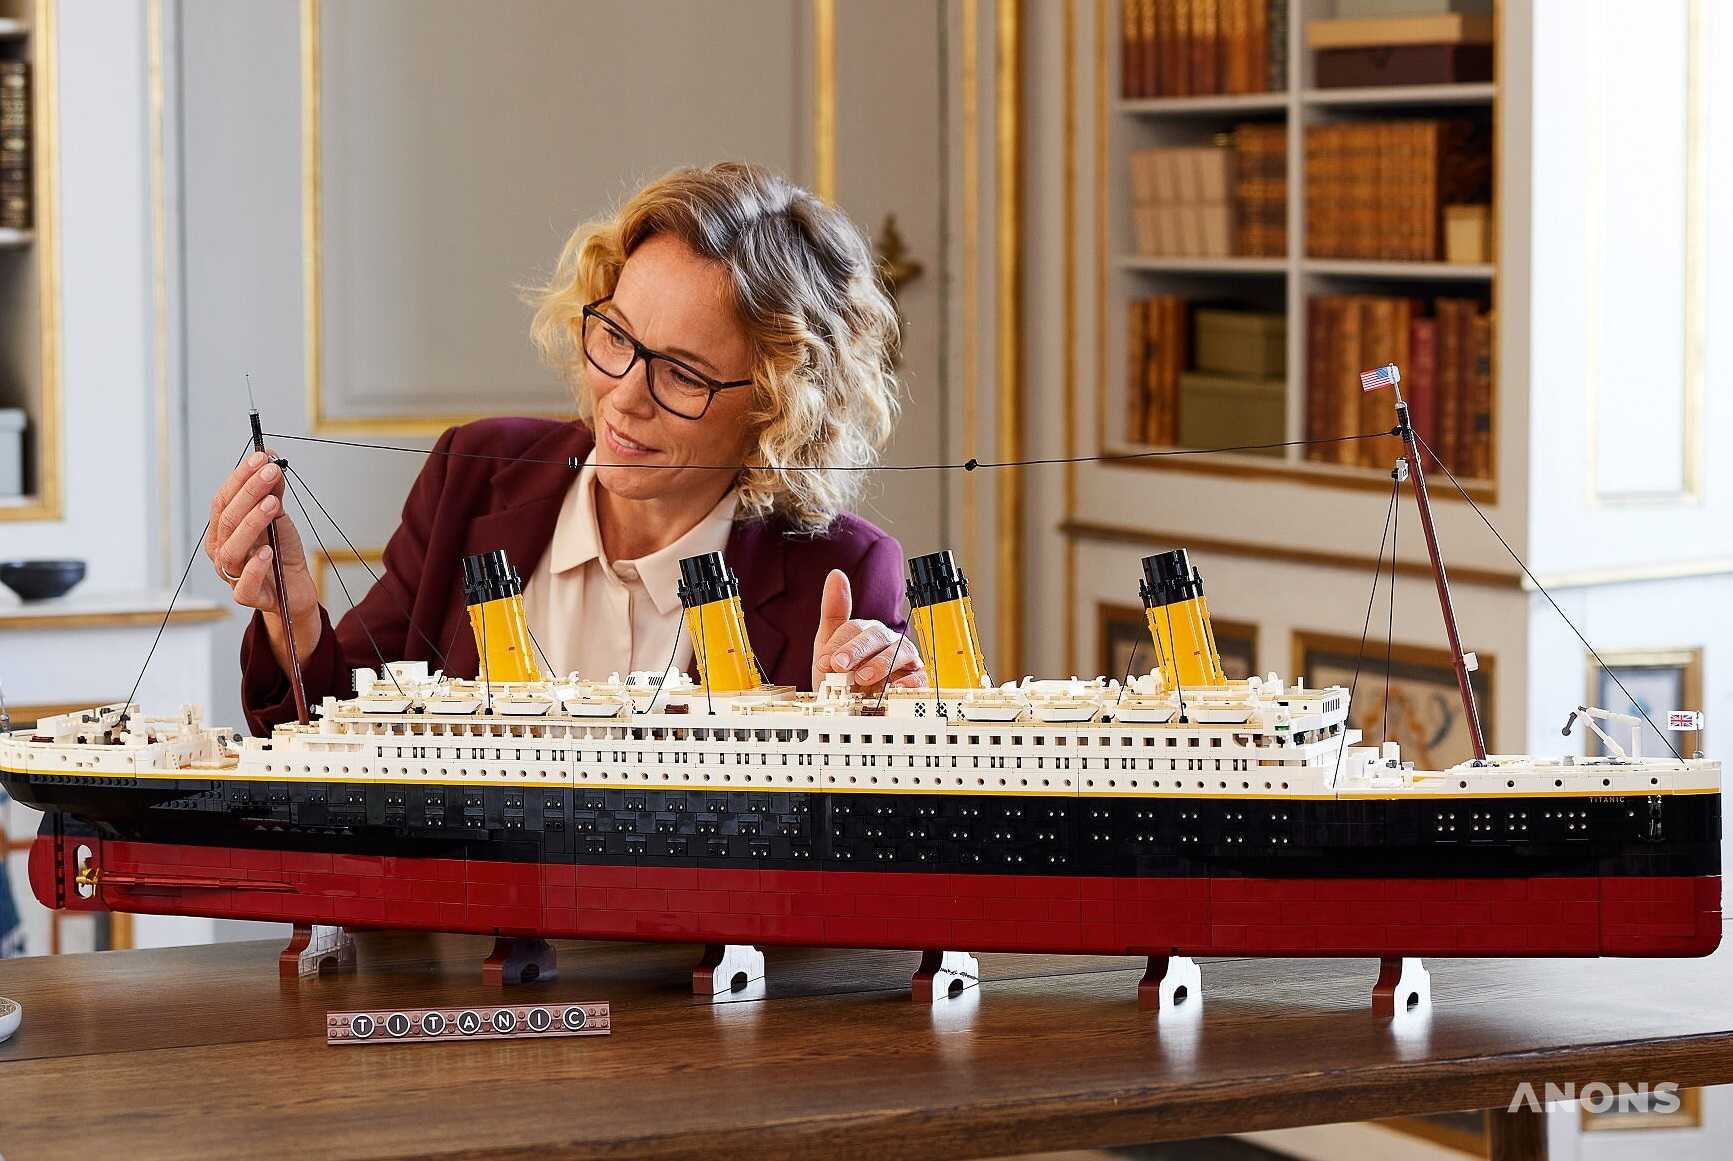 Lego представила один из самых крупных наборов – копию «Титаника» из 9090 деталей